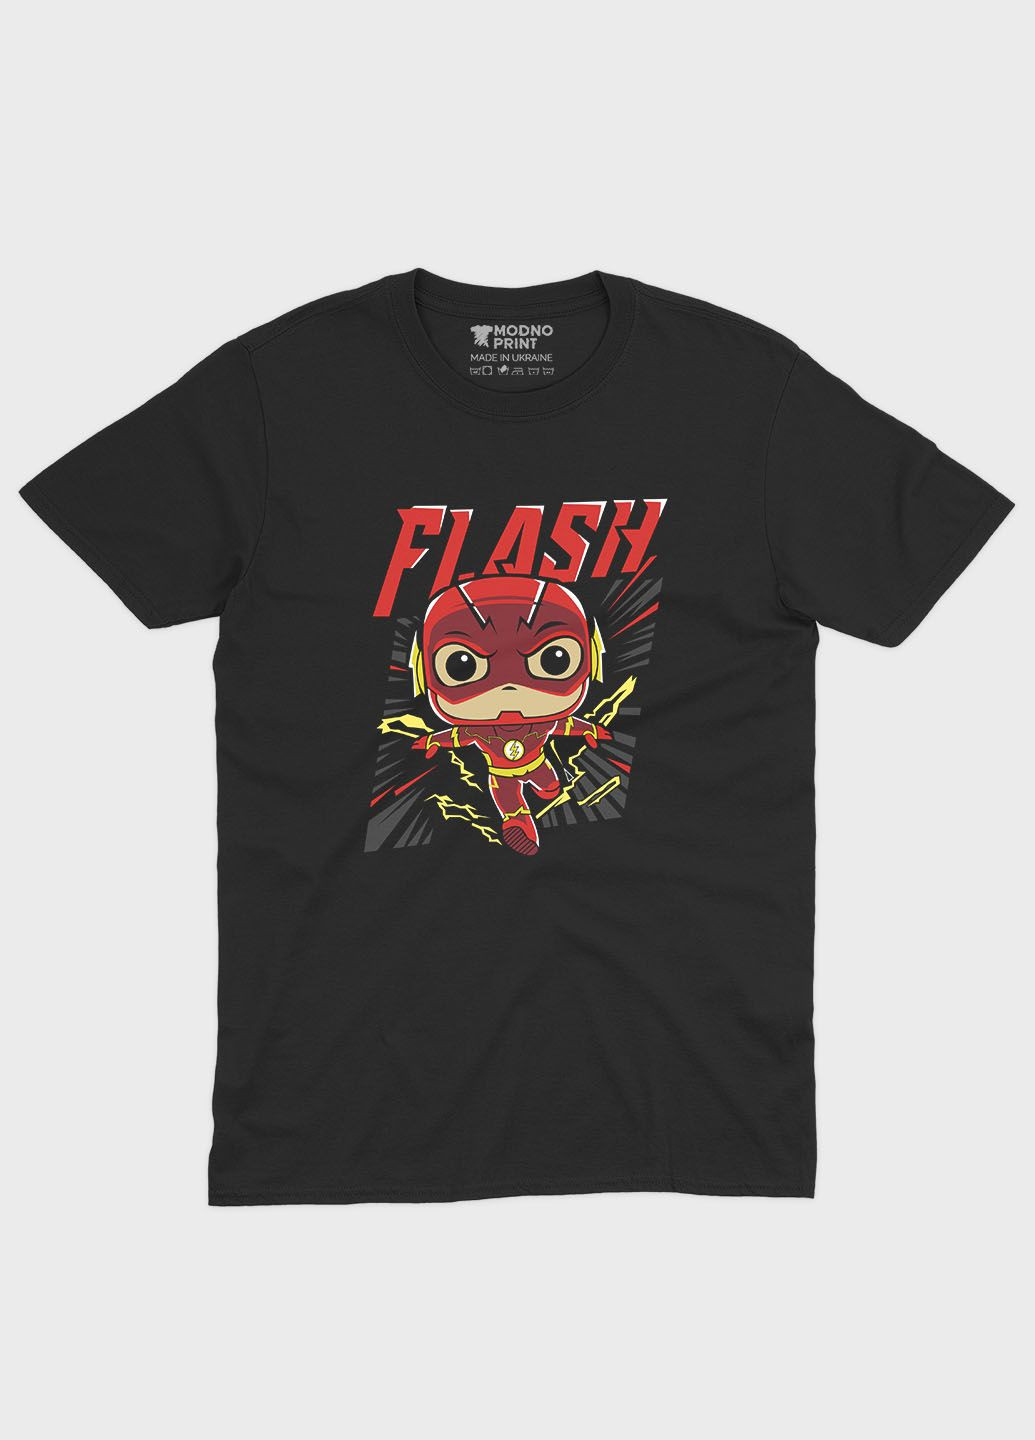 Чорна демісезонна футболка для хлопчика з принтом супергероя - флеш (ts001-1-bl-006-010-006-b) Modno